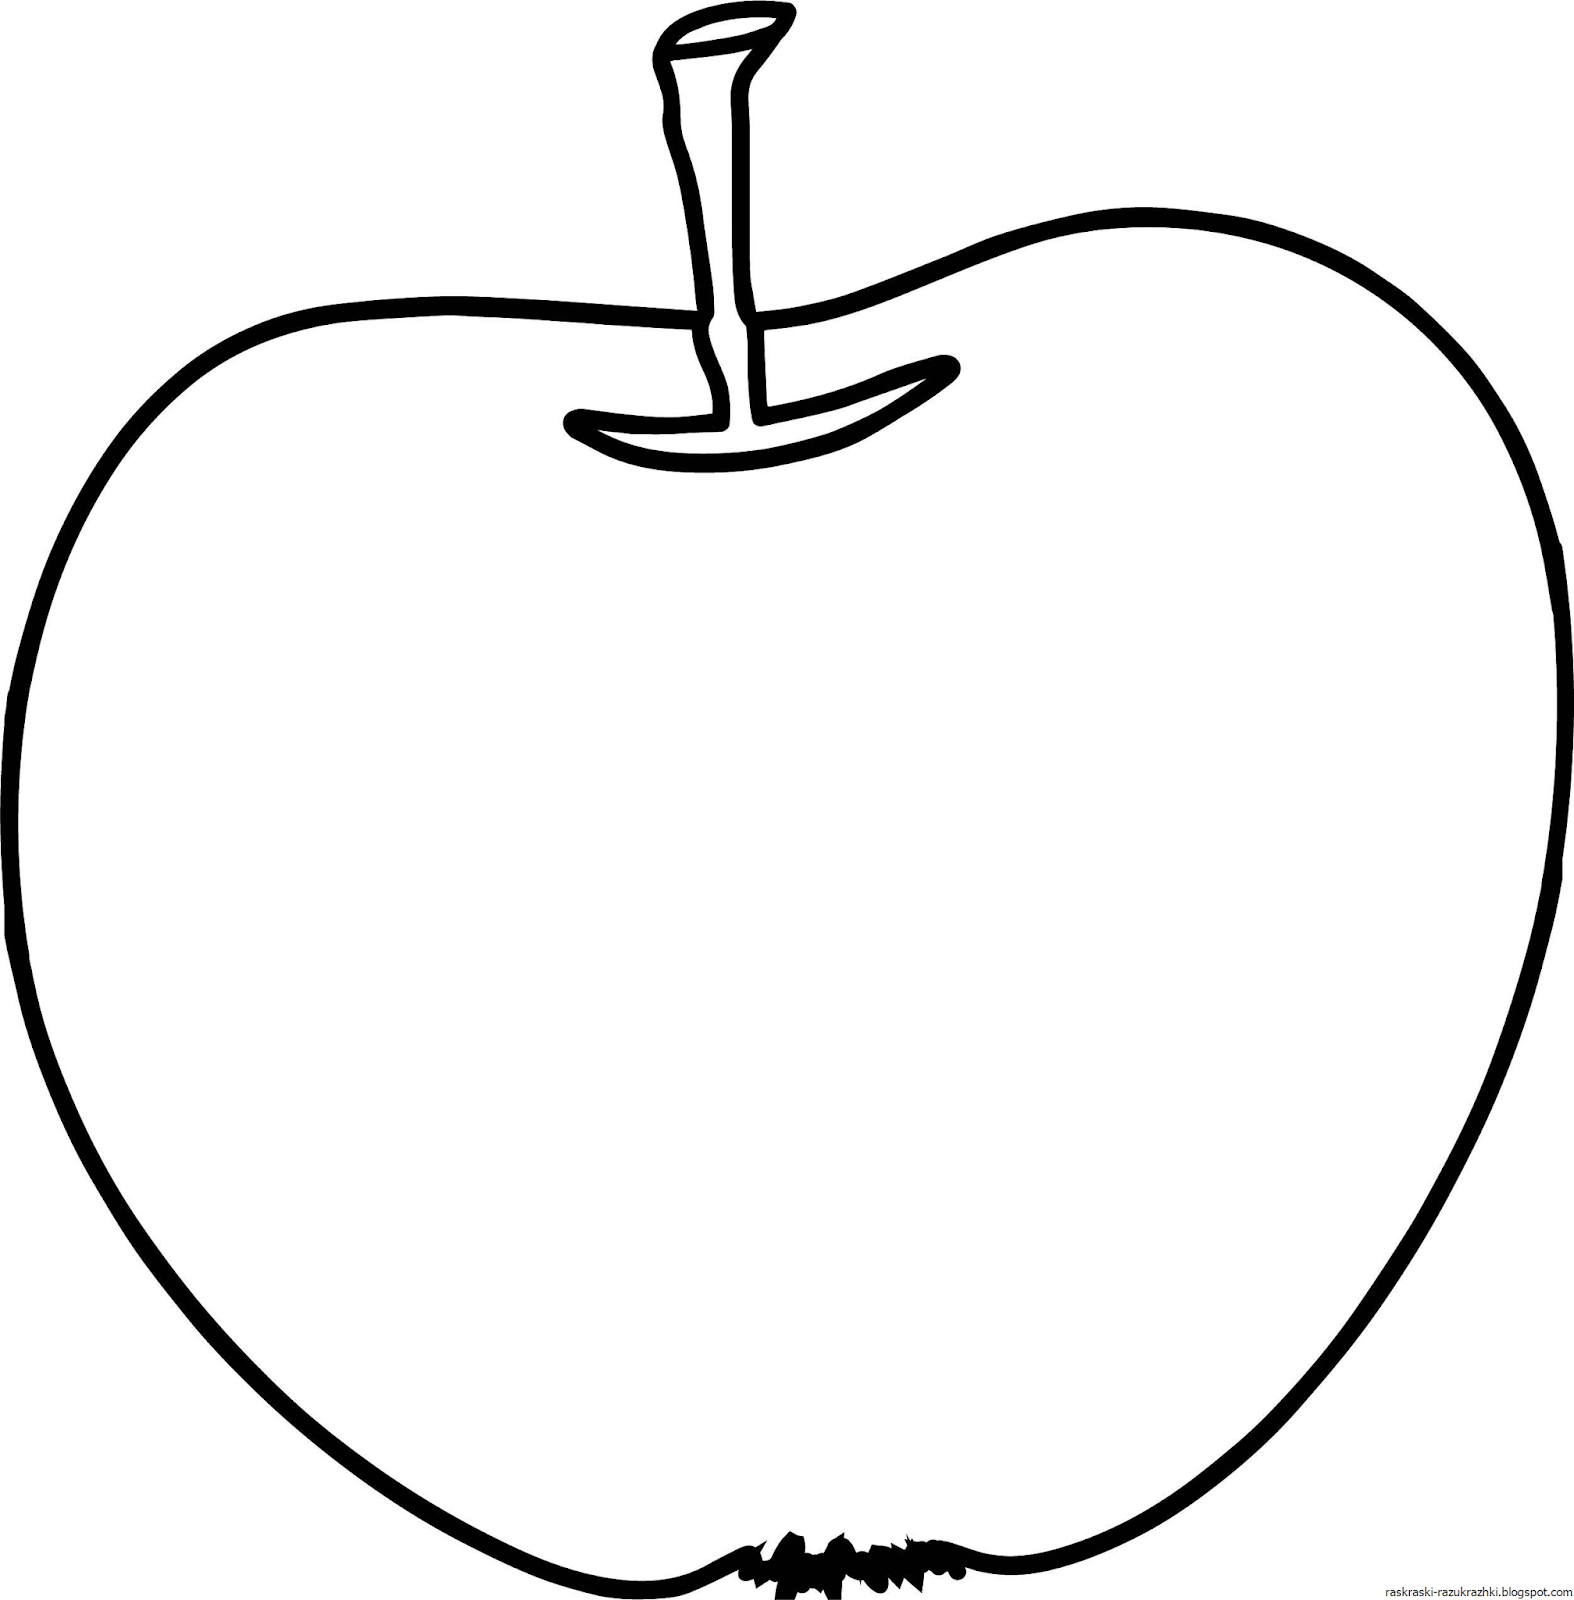 Раскраска 3 яблока. Яблоко раскраска. Яблоко раскраска для детей. Яблоко рисунок. Яблочко раскраска.